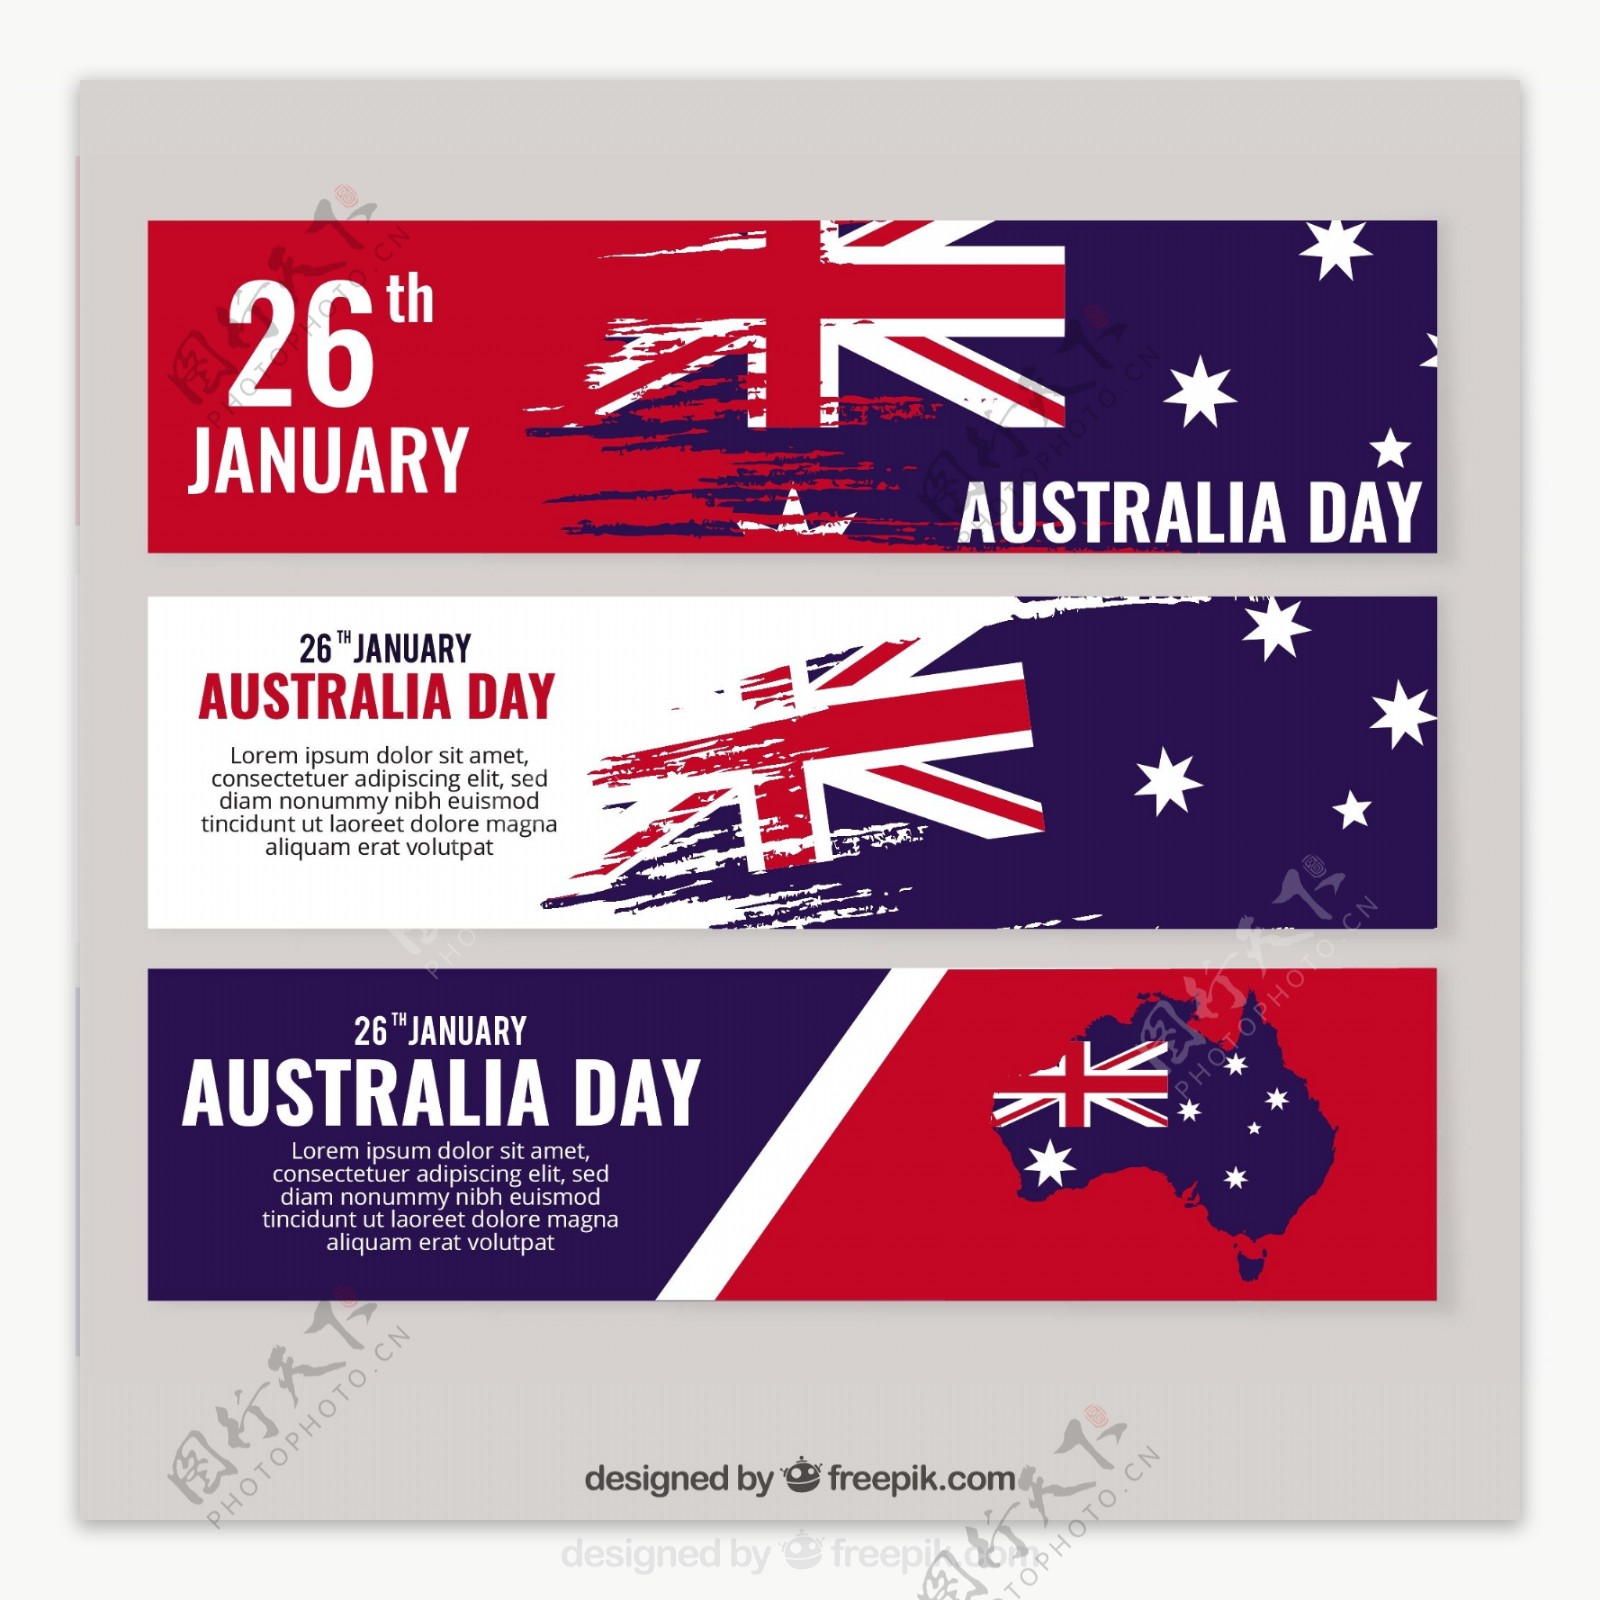 澳大利亚日的旗帜